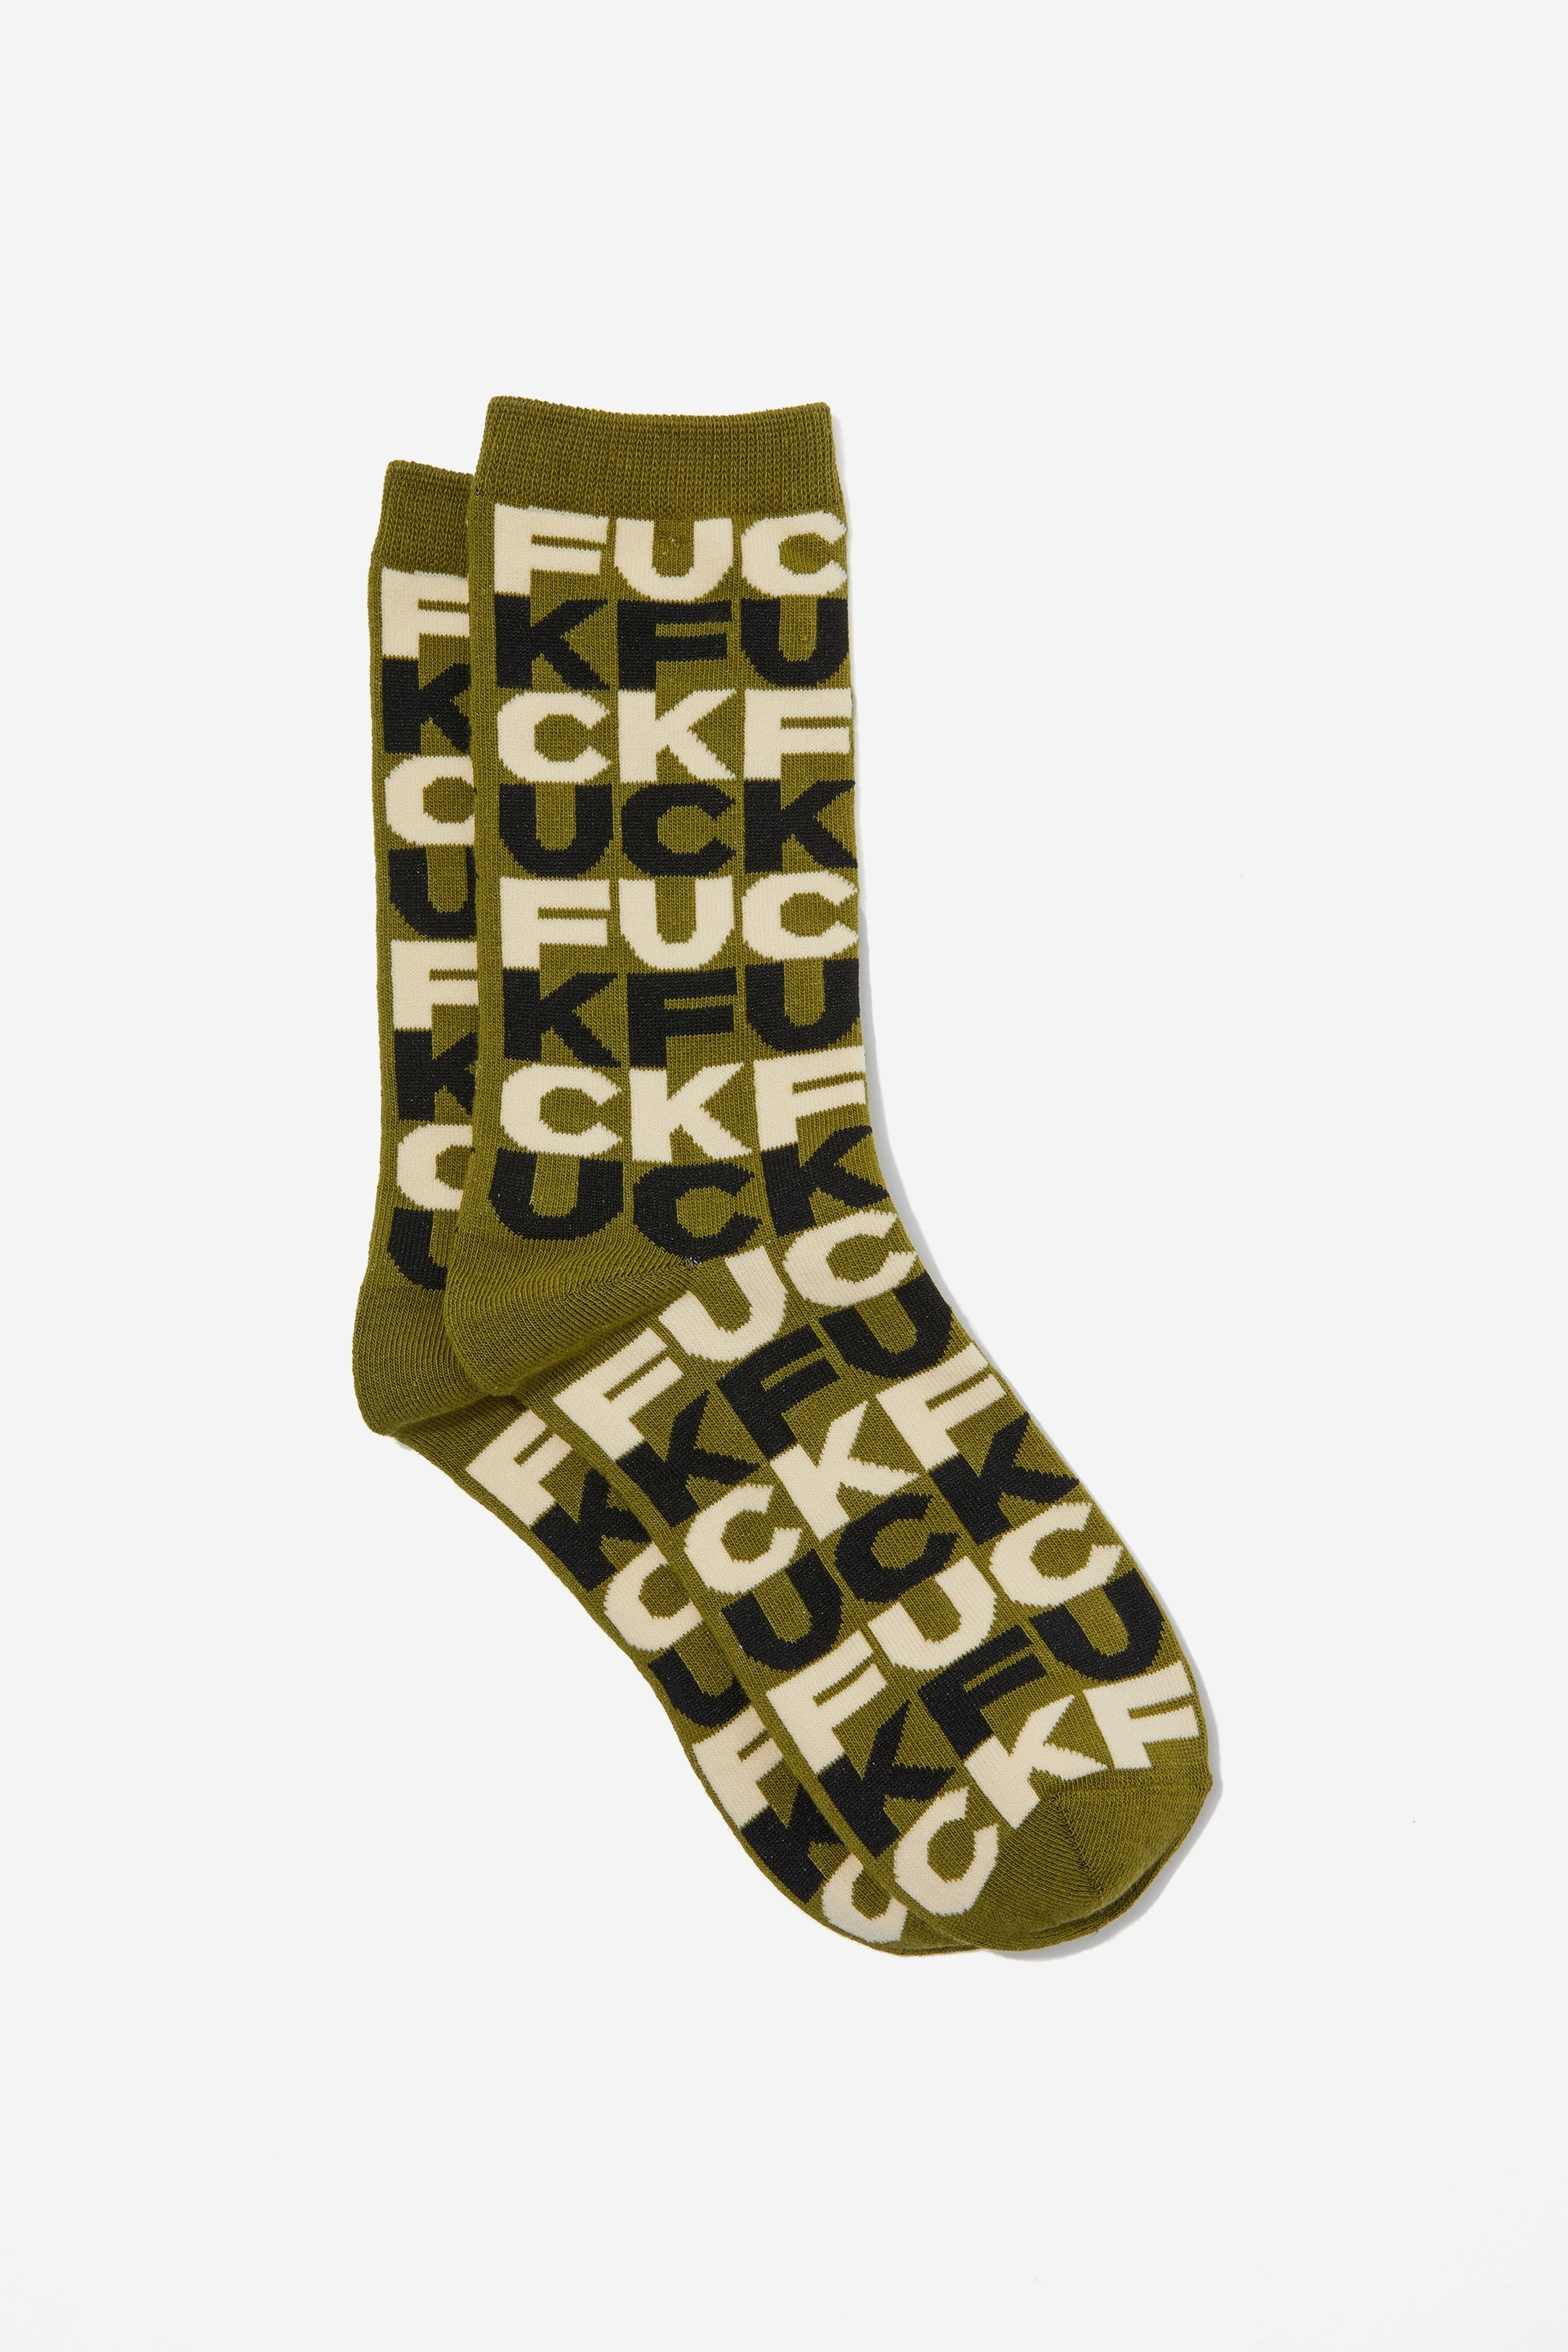 Cuck socks